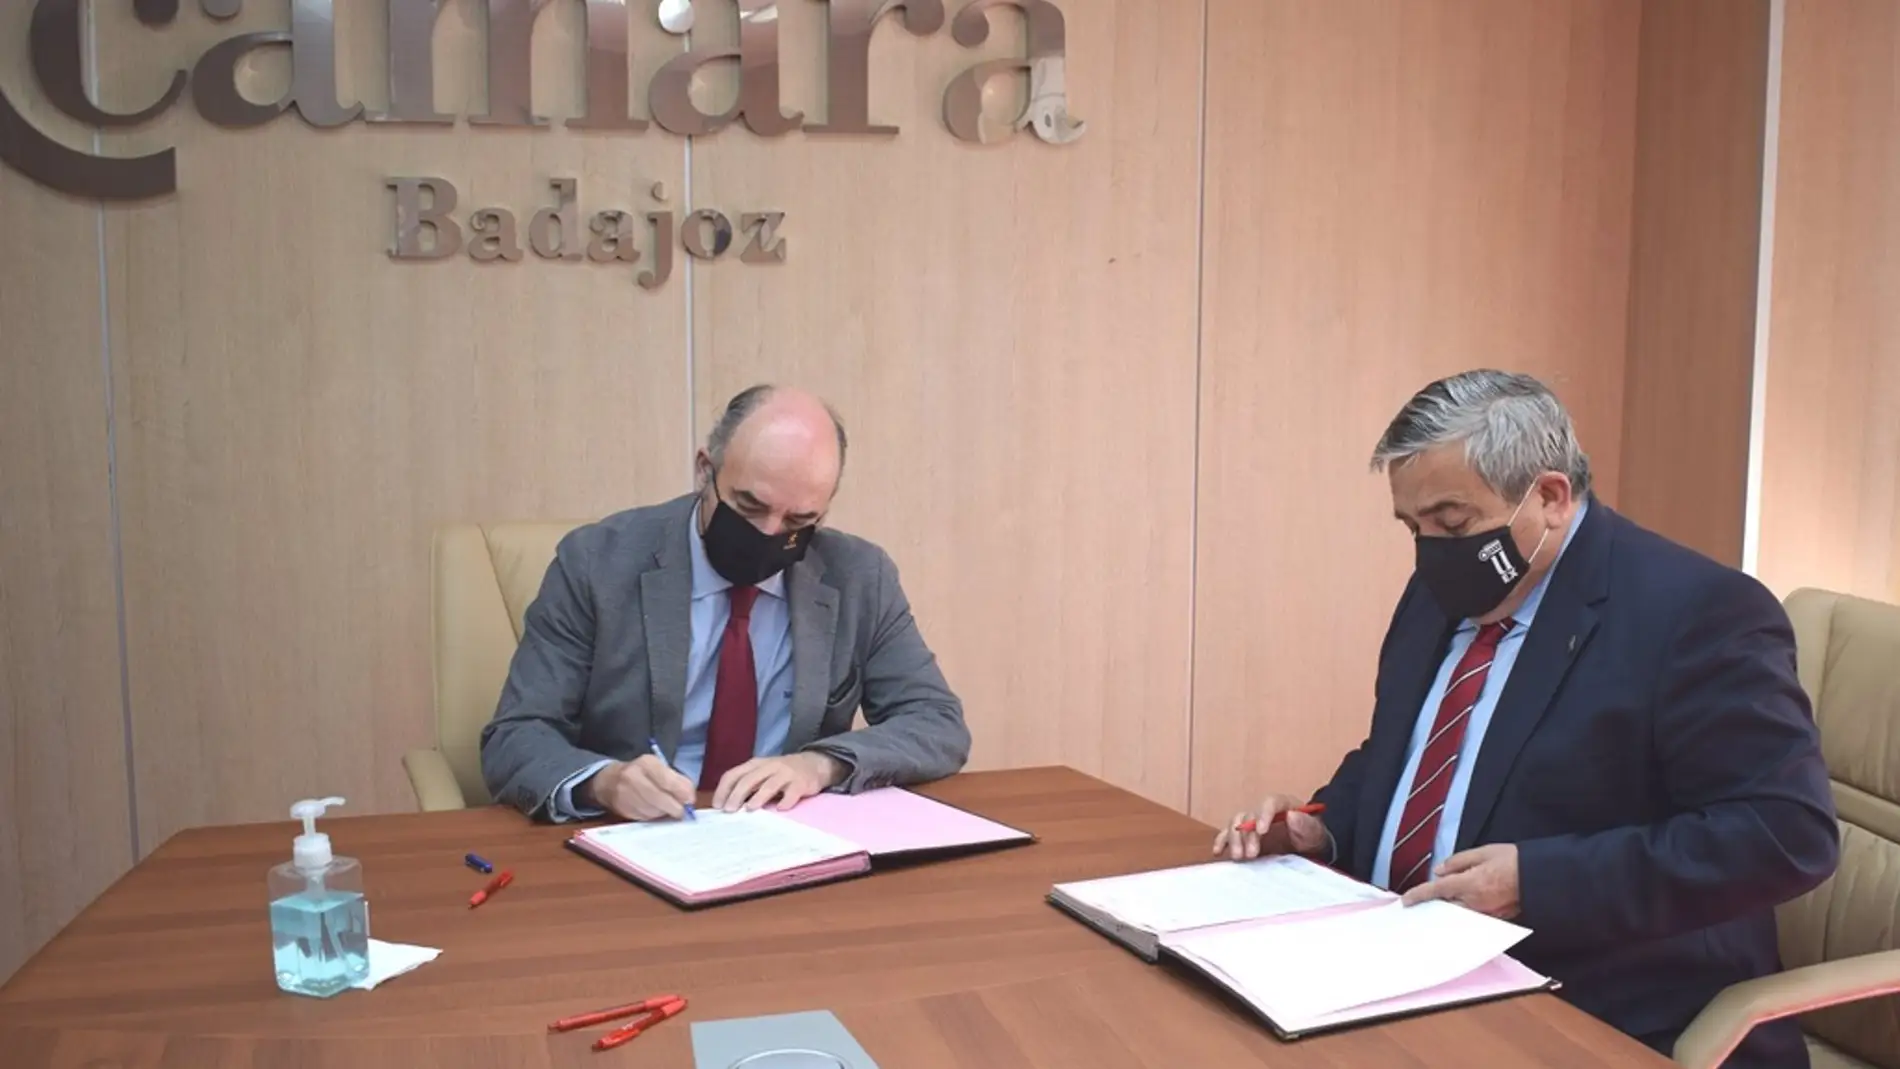 La Cámara de Comercio de Badajoz y la UEx firman un convenio para poner en marcha acciones formativas conjuntas